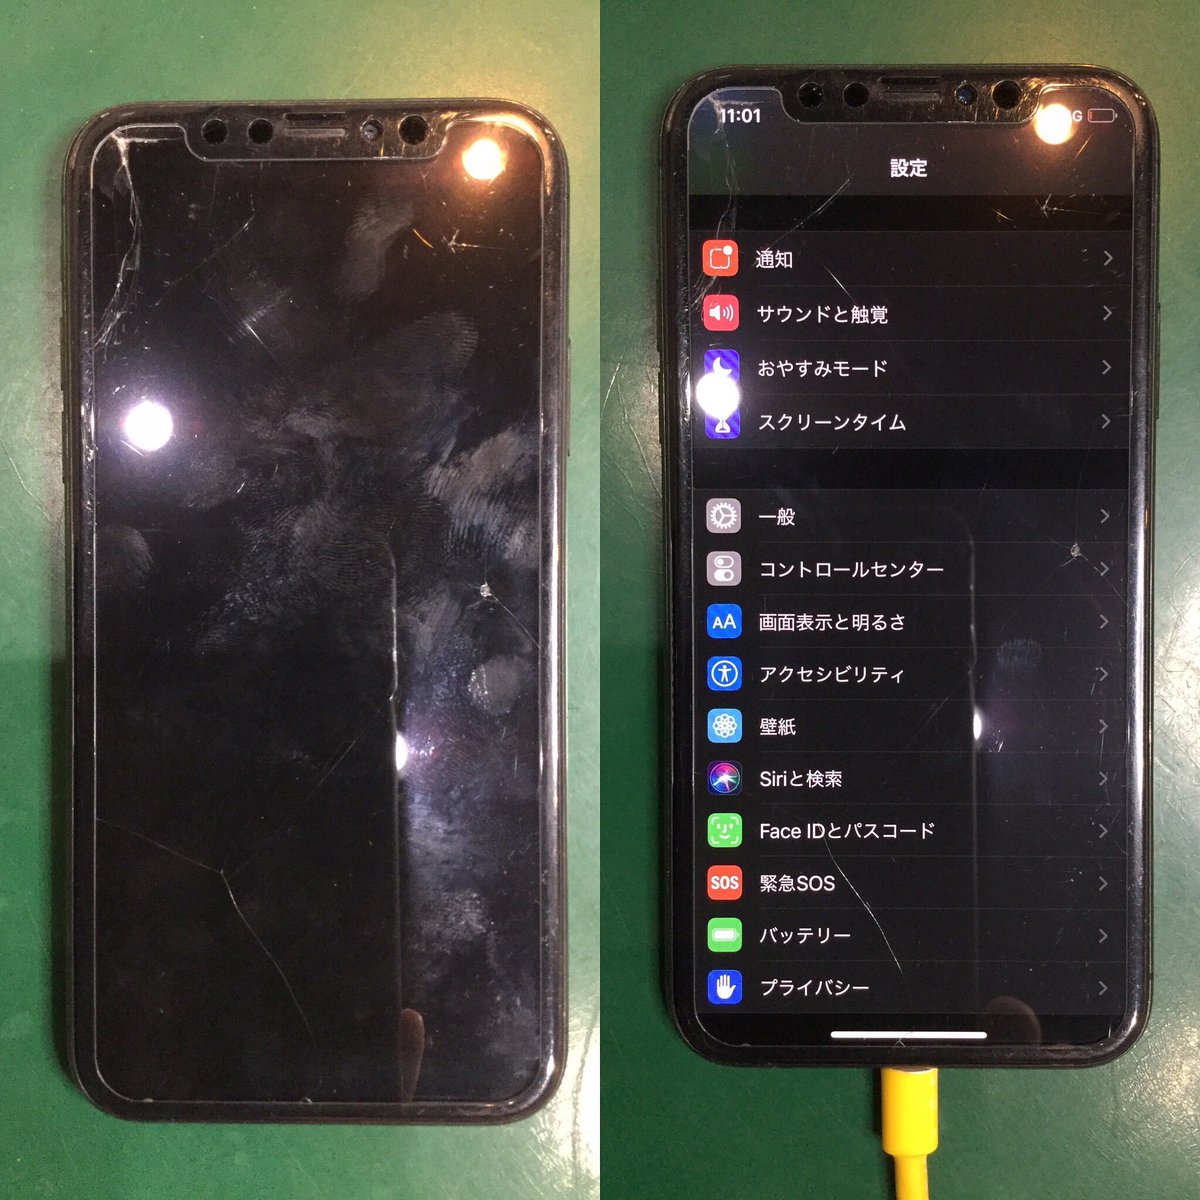 Iphone修理 ドローン販売 Dapple豊田店 S様がiphonexのスピーカー修理でご来店 イヤースピーカー部分に水が入り異常が起きていました スピーカーを交換しデータそのままお返しです 5 15 修理価格セール中です 愛知県 豊田市 Iphone修理